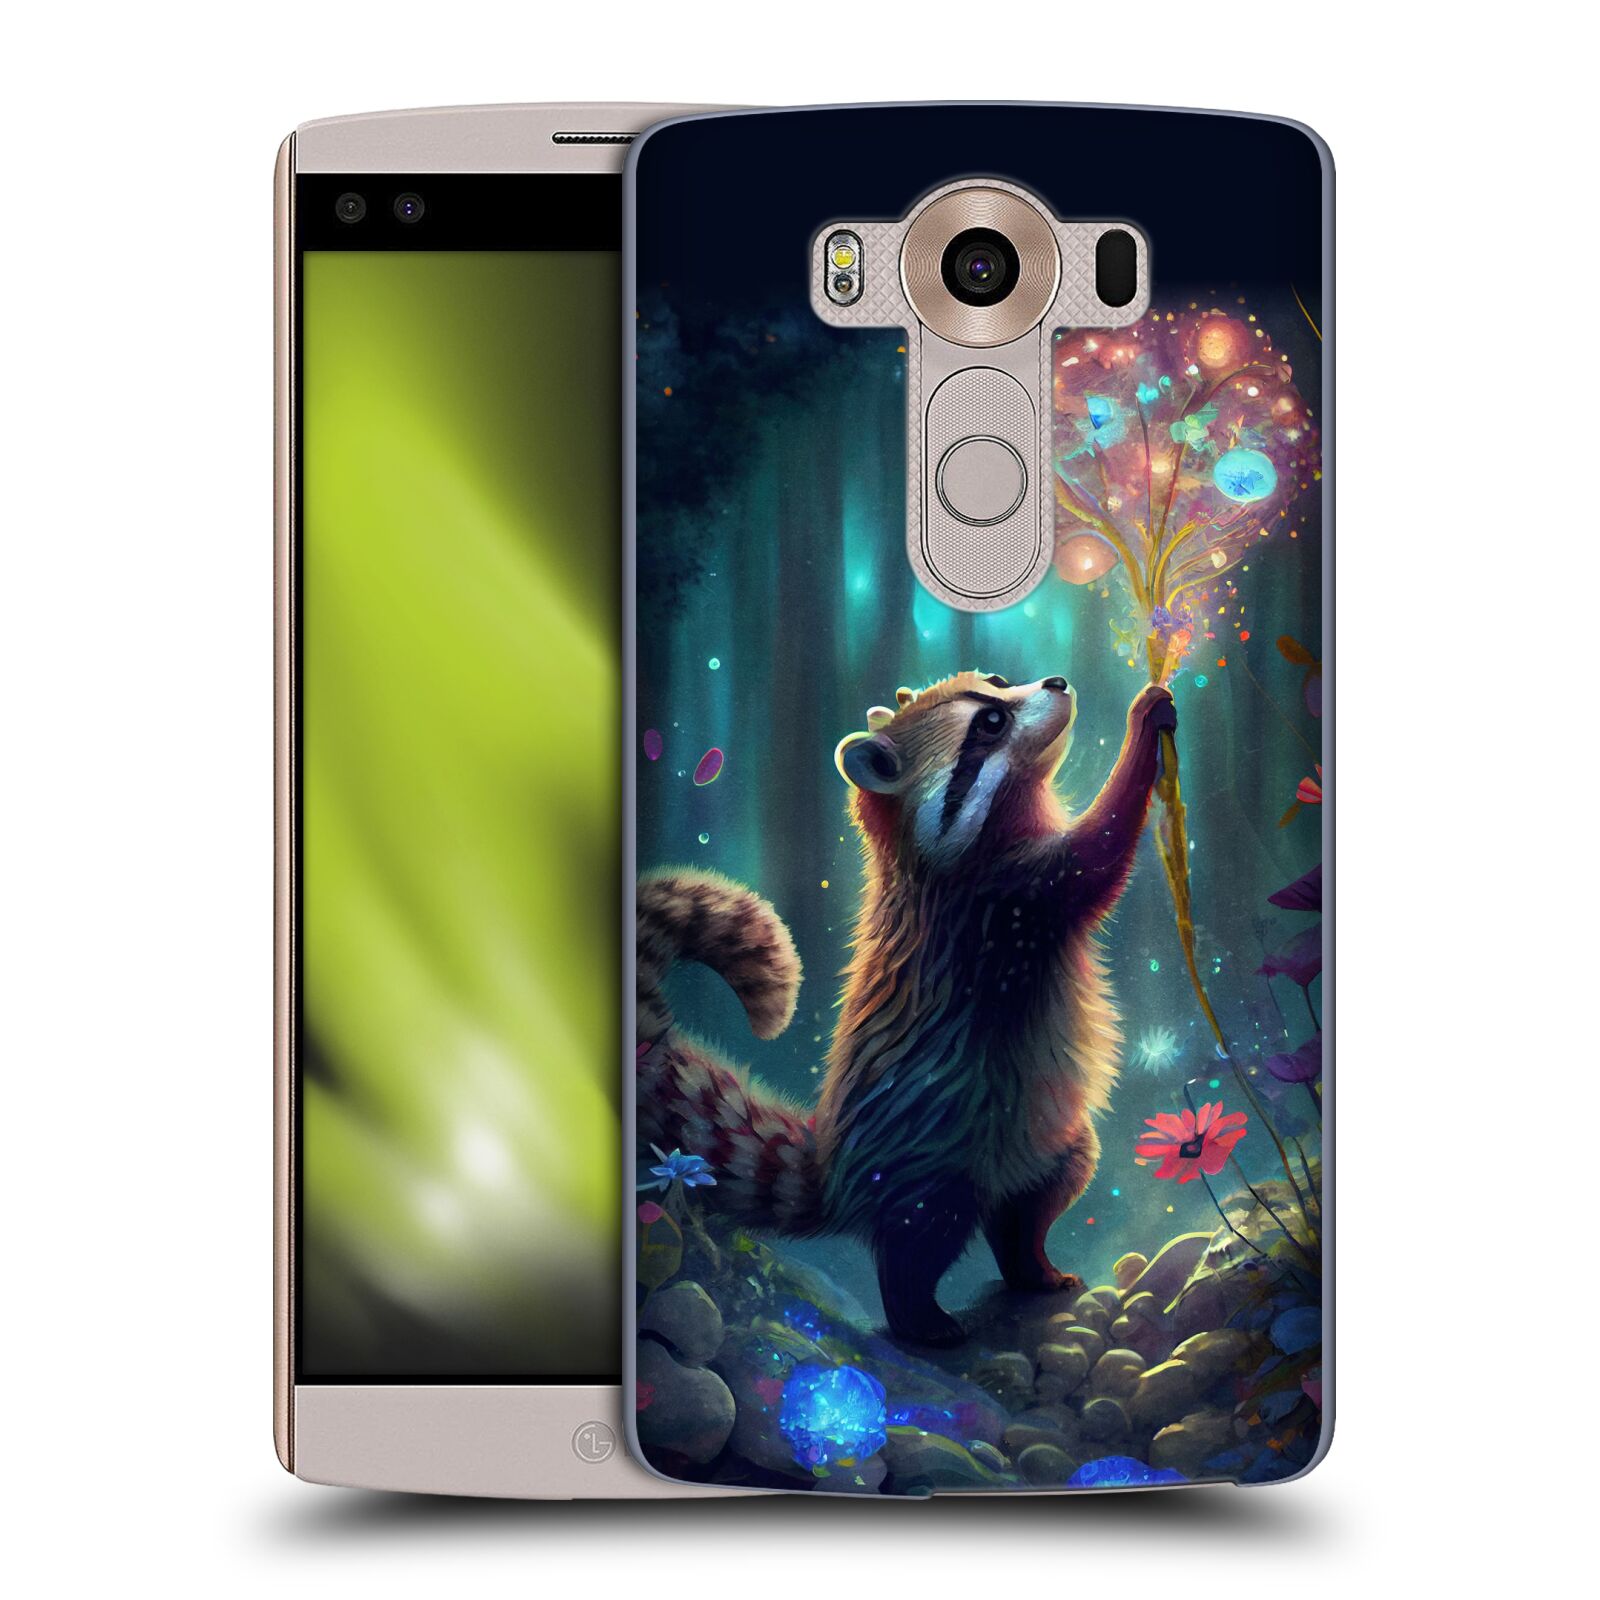 Obal na mobil LG V10 - HEAD CASE - JK Stewart medvídek mýval a květiny